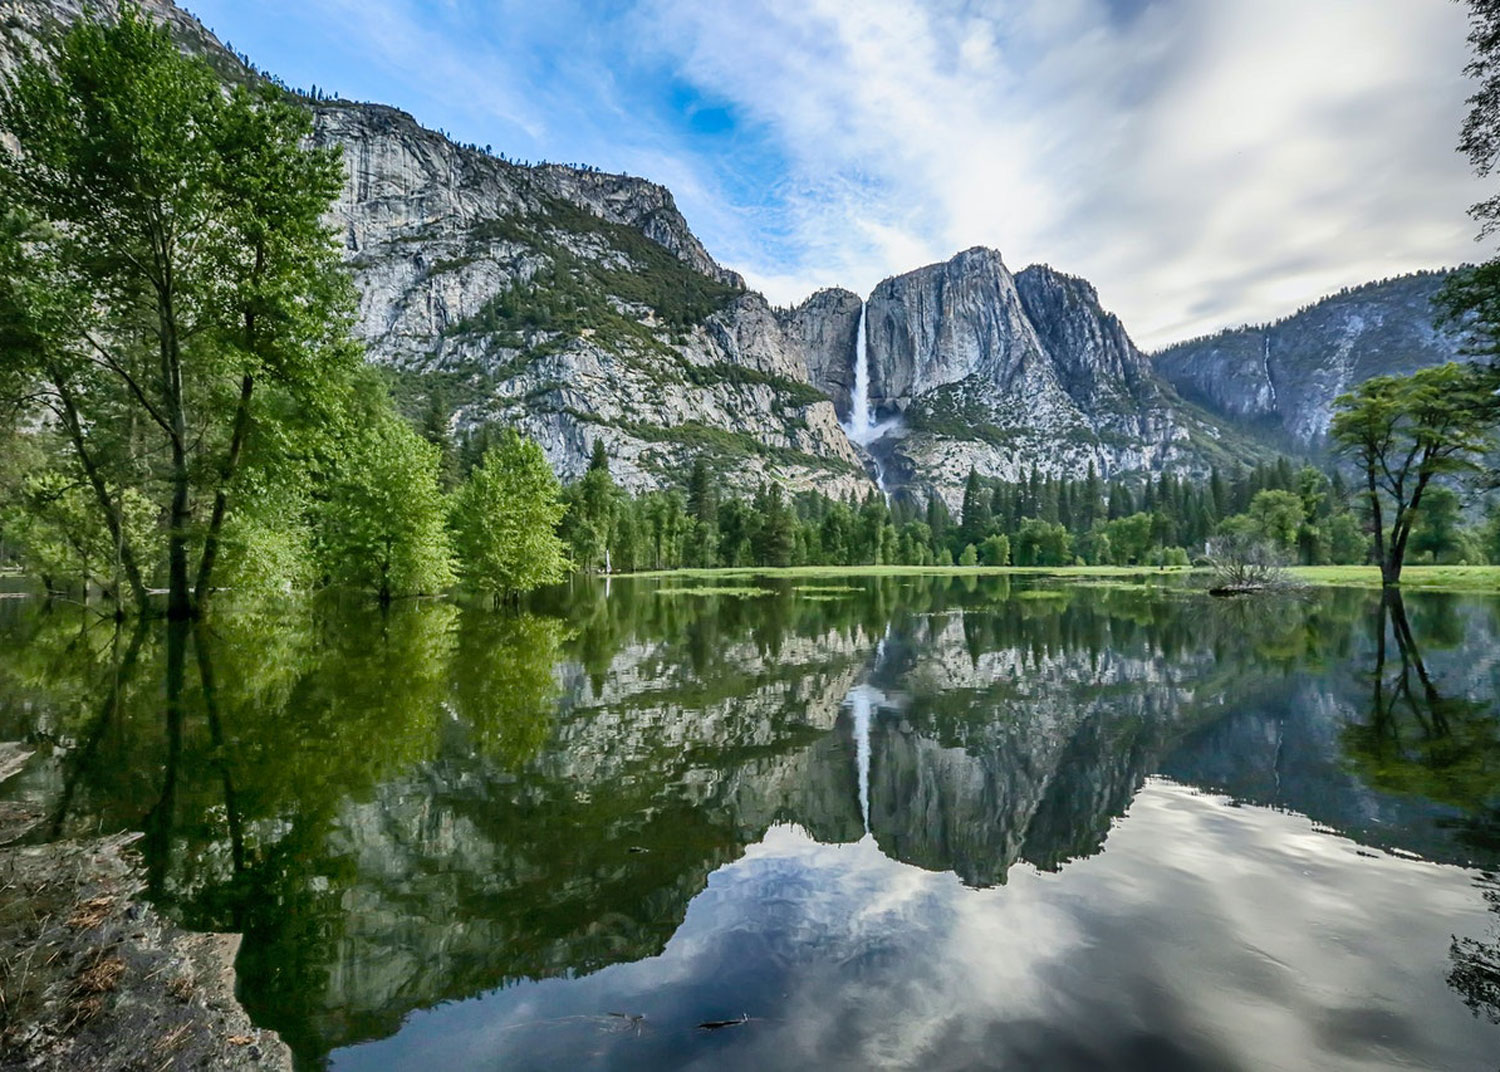 Parque national de Yosemite